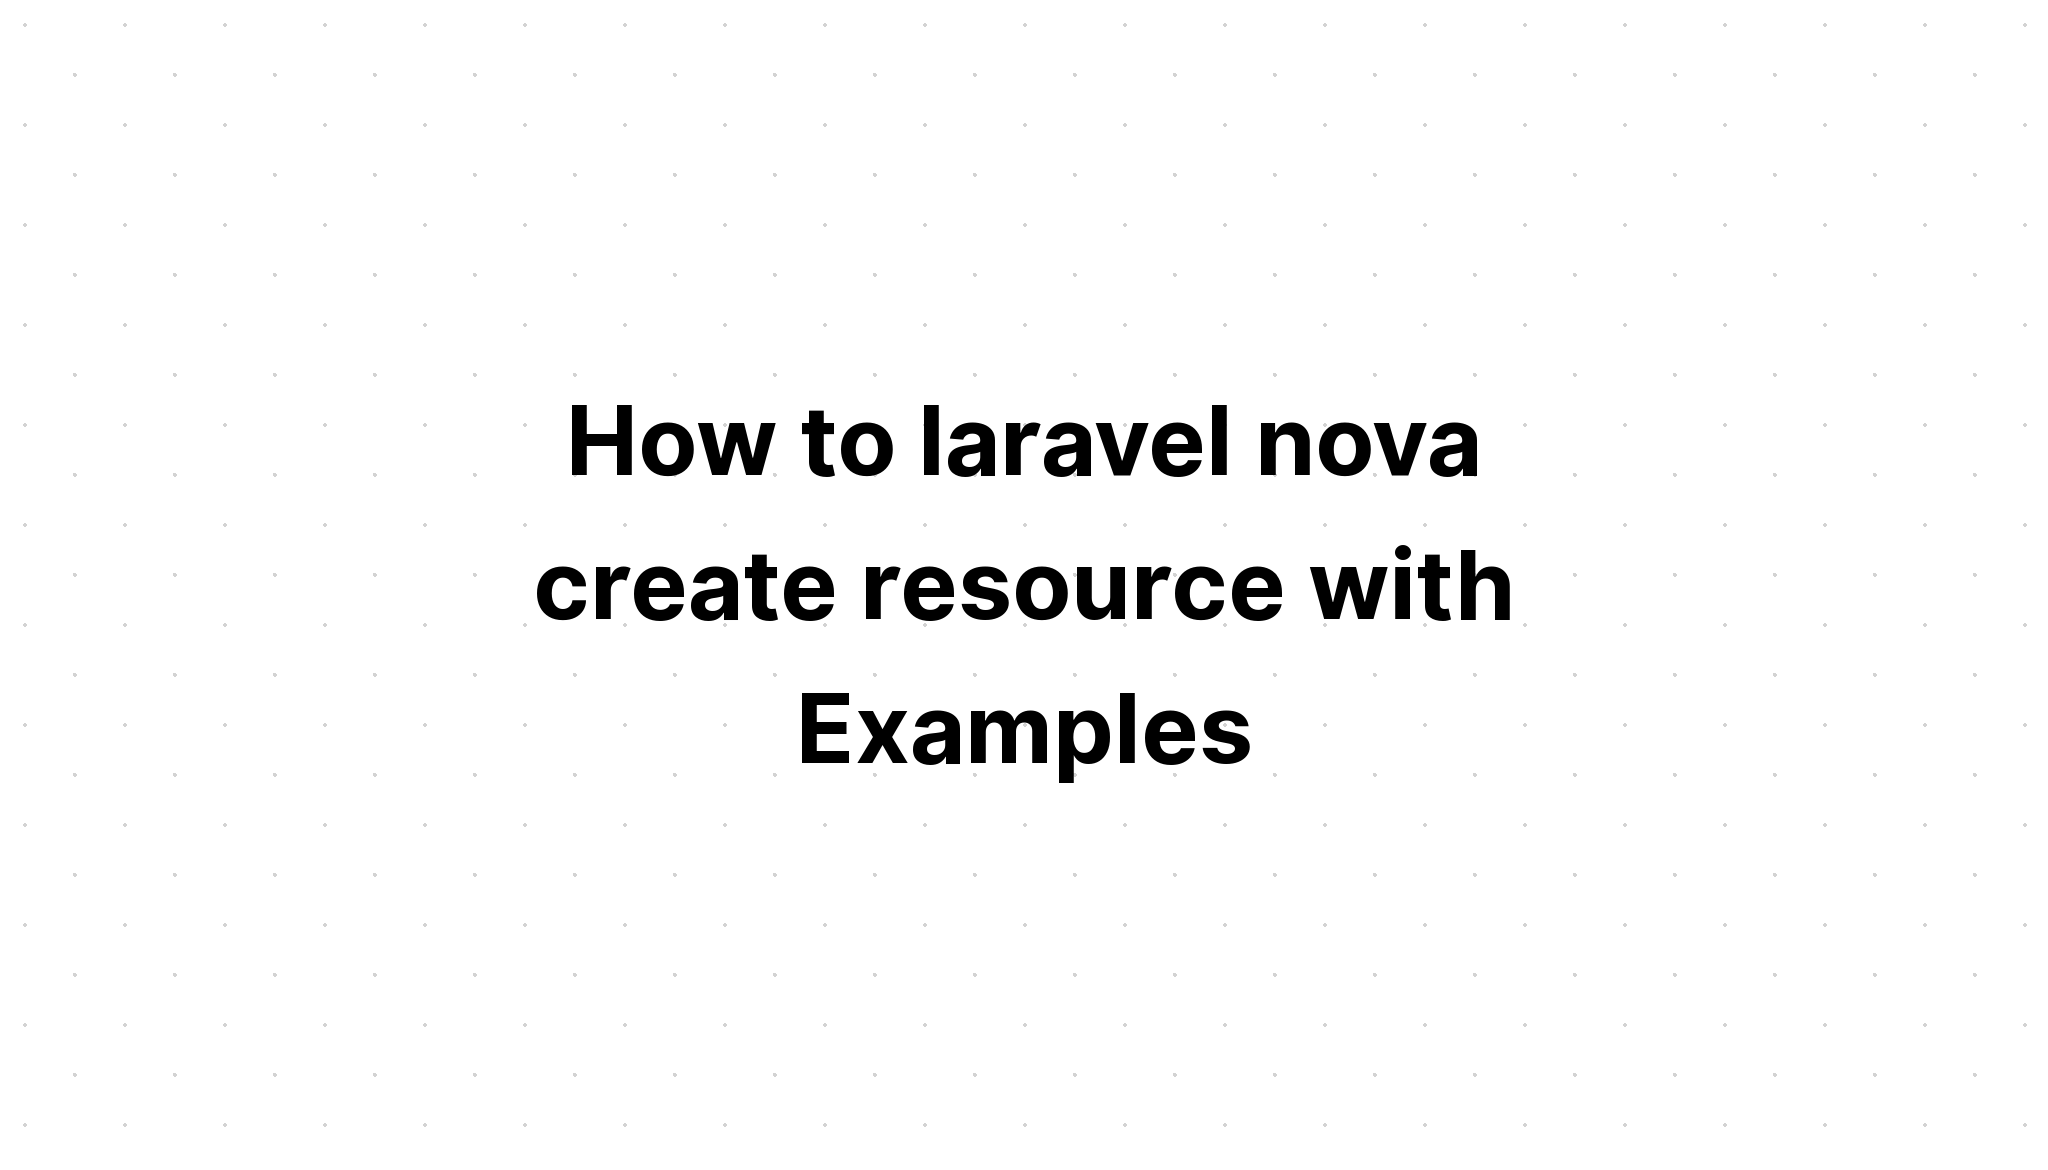 Cara laravel nova membuat sumber daya dengan Contoh